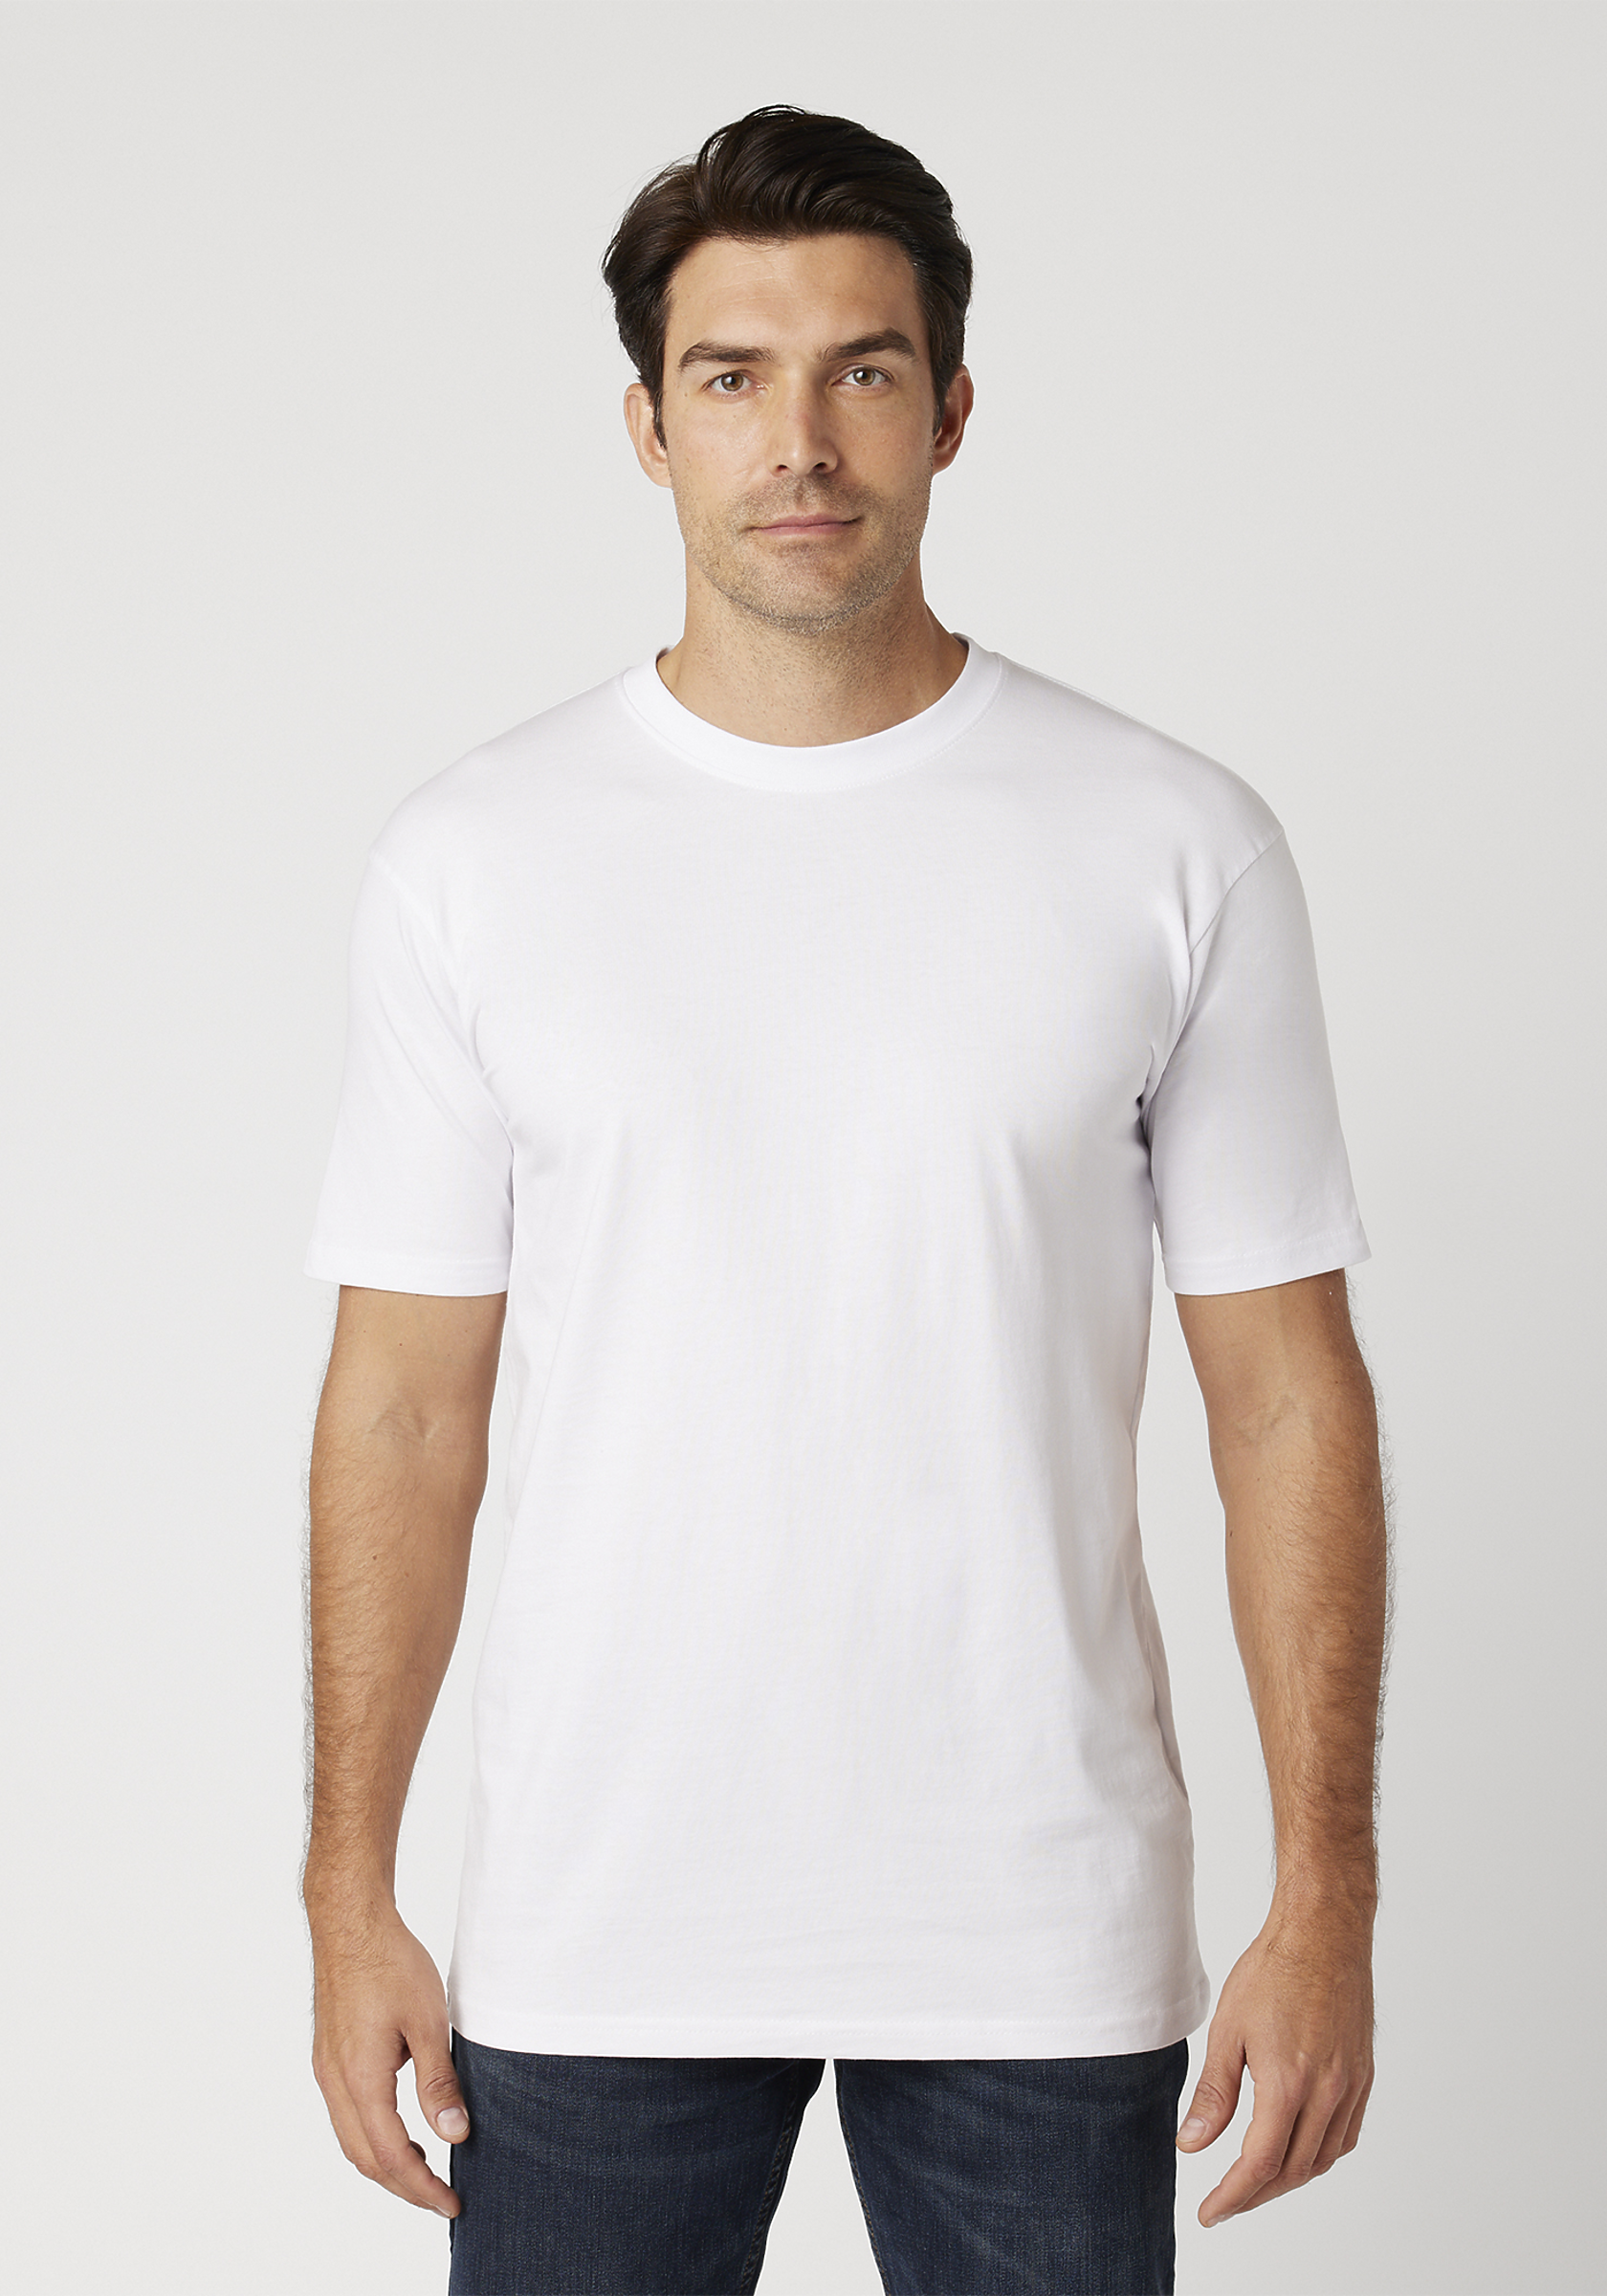 Cathalem Heavyweight T Shirts for Men Originals Lightweight Cotton  Tee,White XL